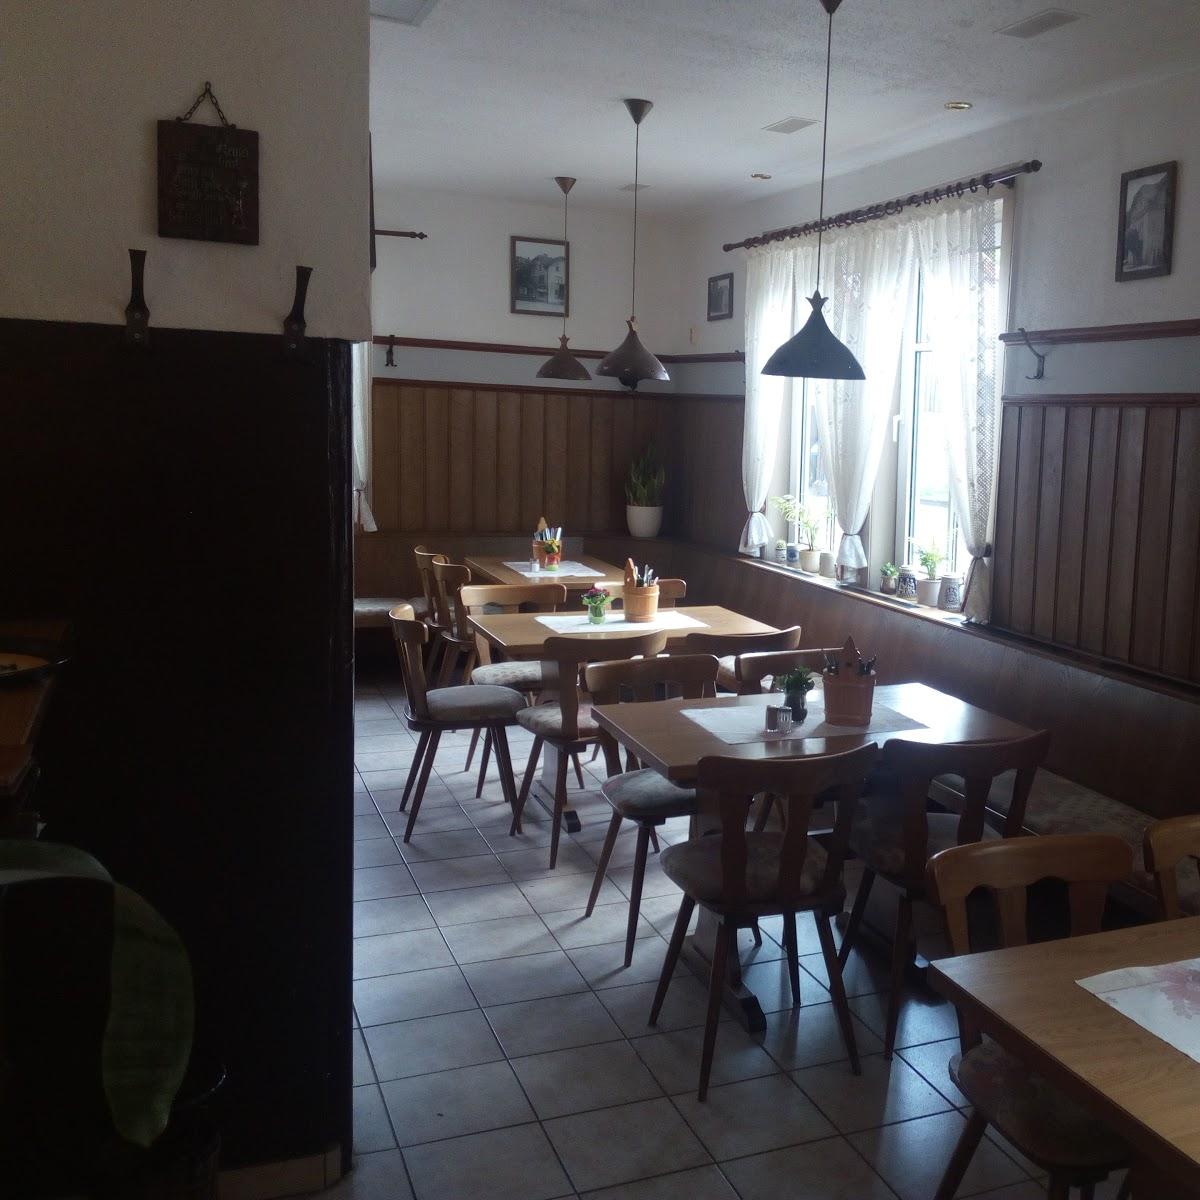 Restaurant "Zur Linde Inh.Thomas Kern" in Untermaßfeld